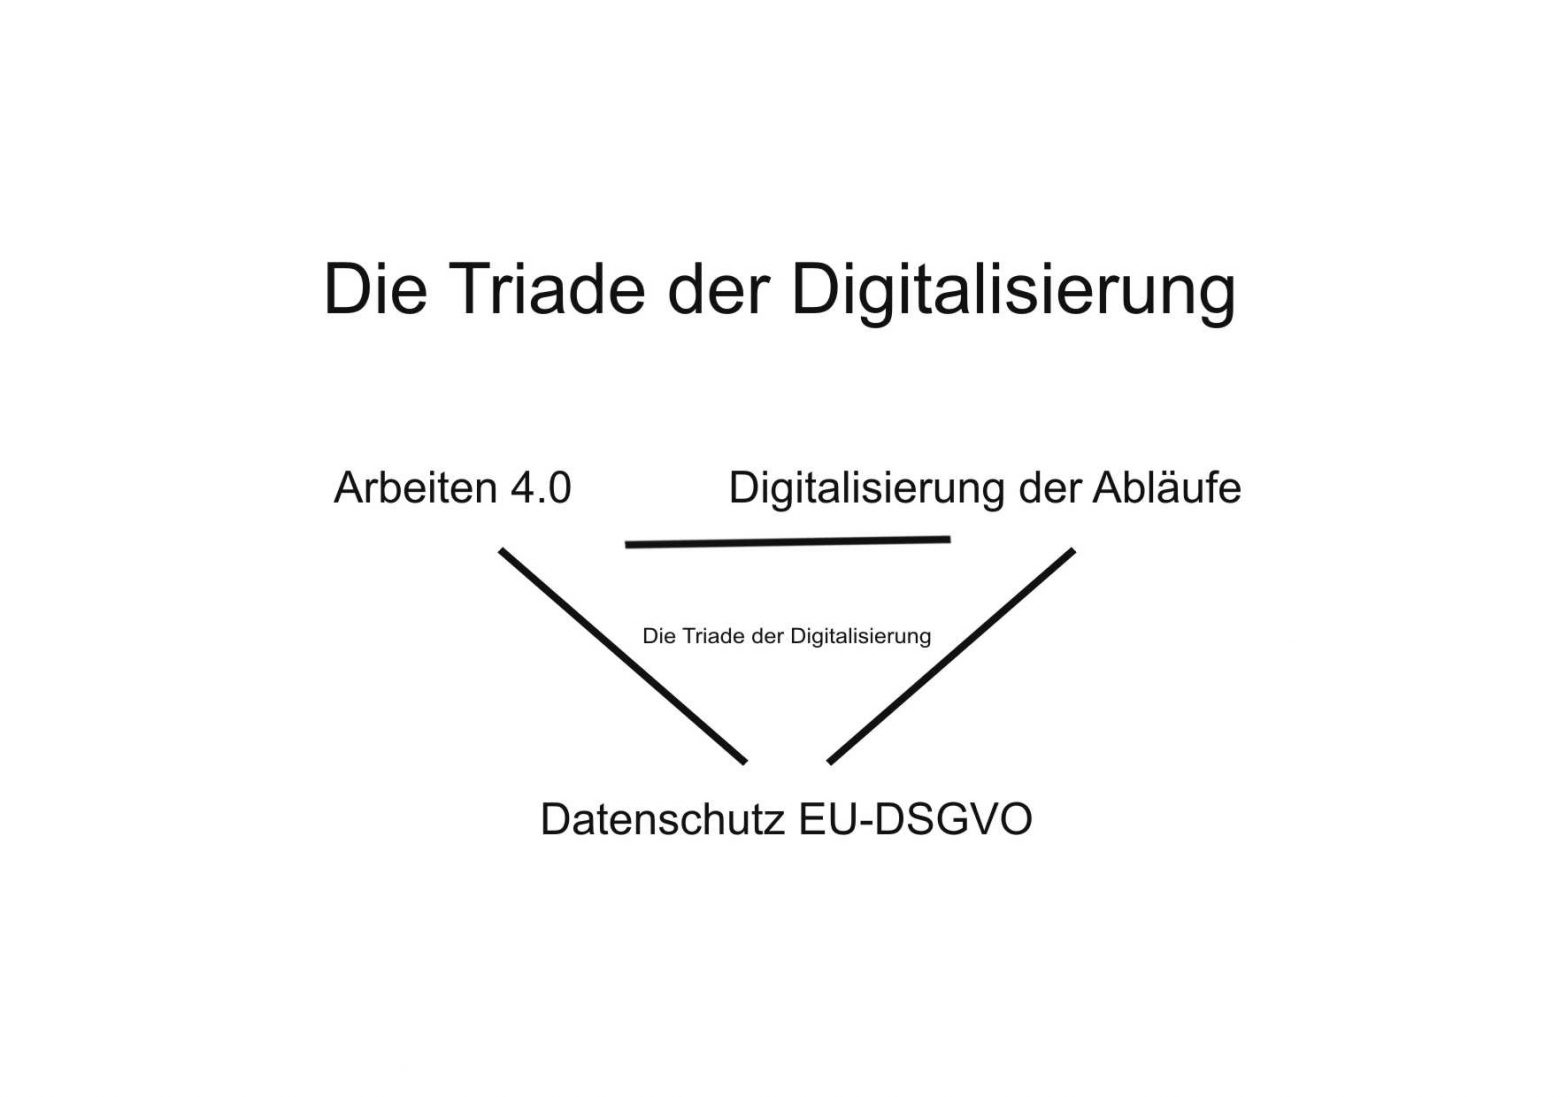 Die Triade der Digitalisierung. Arbeiten 4.0 – Digitalisierung der Abläufe – Datenschutz (EU-DSGVO). - Michael Tönsing, MT MARKETEER